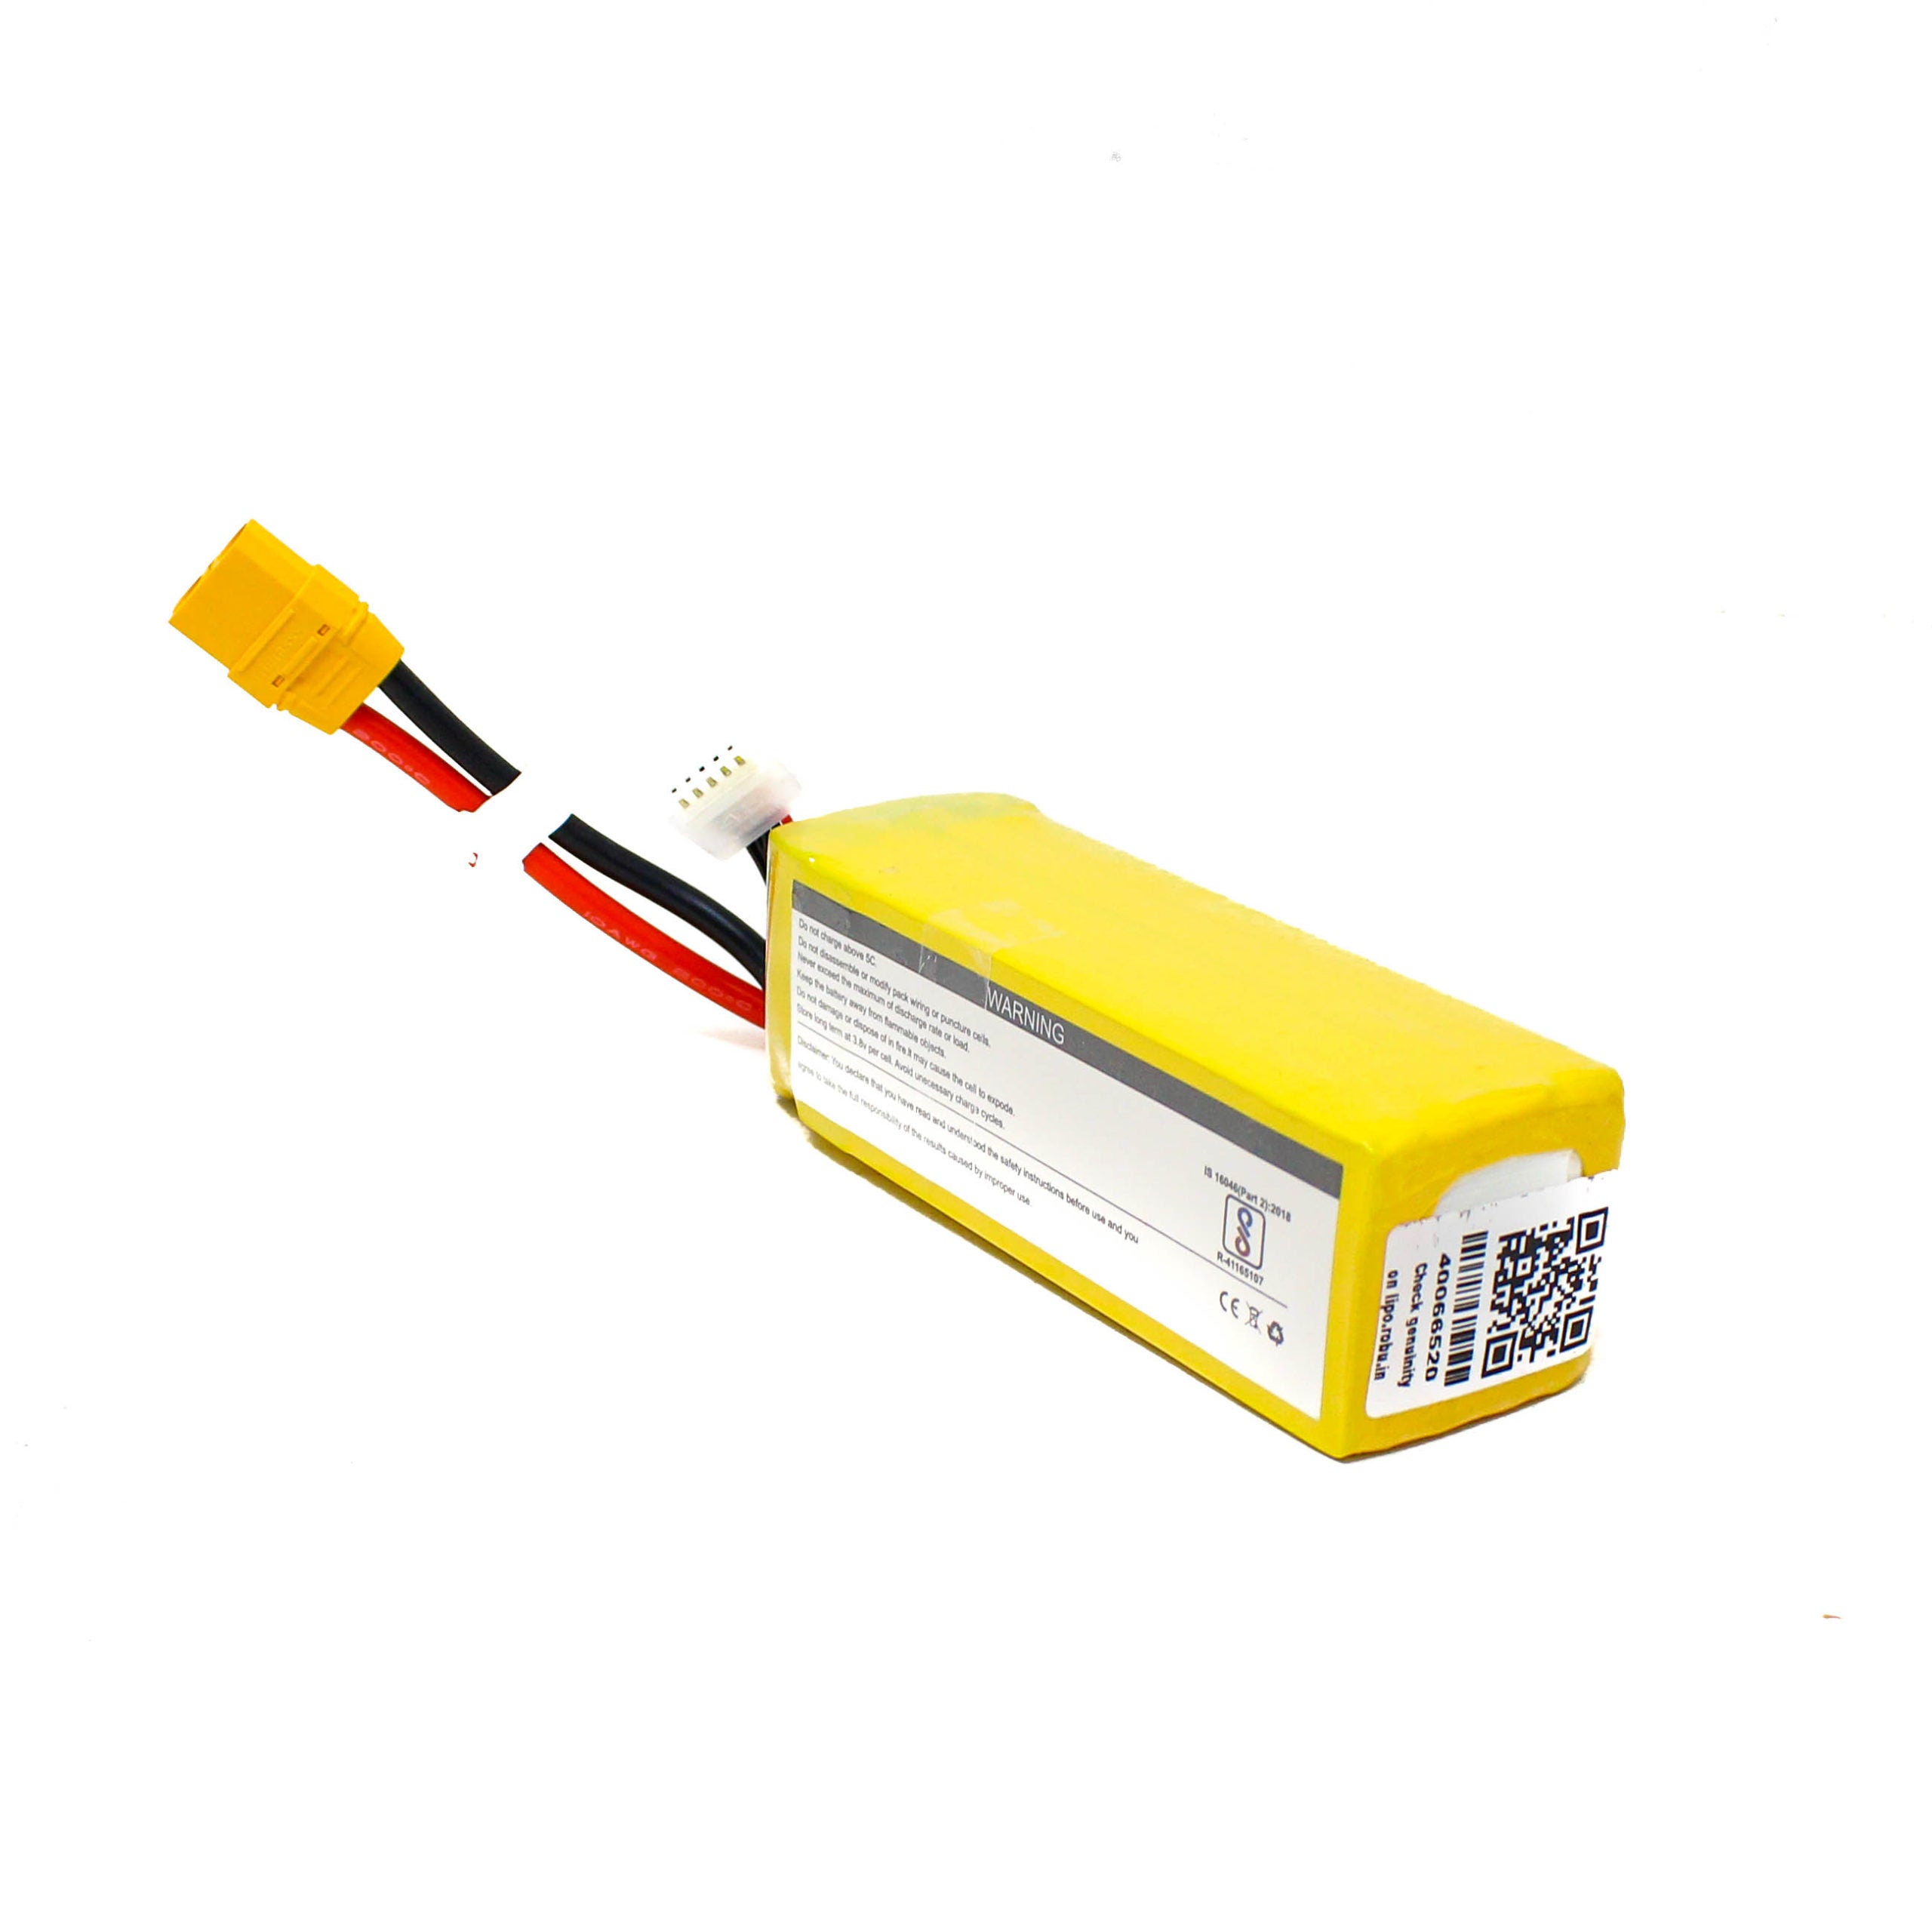 Lemon 6750mAh 4S 25C/50C Lithium Polymer Battery Pack